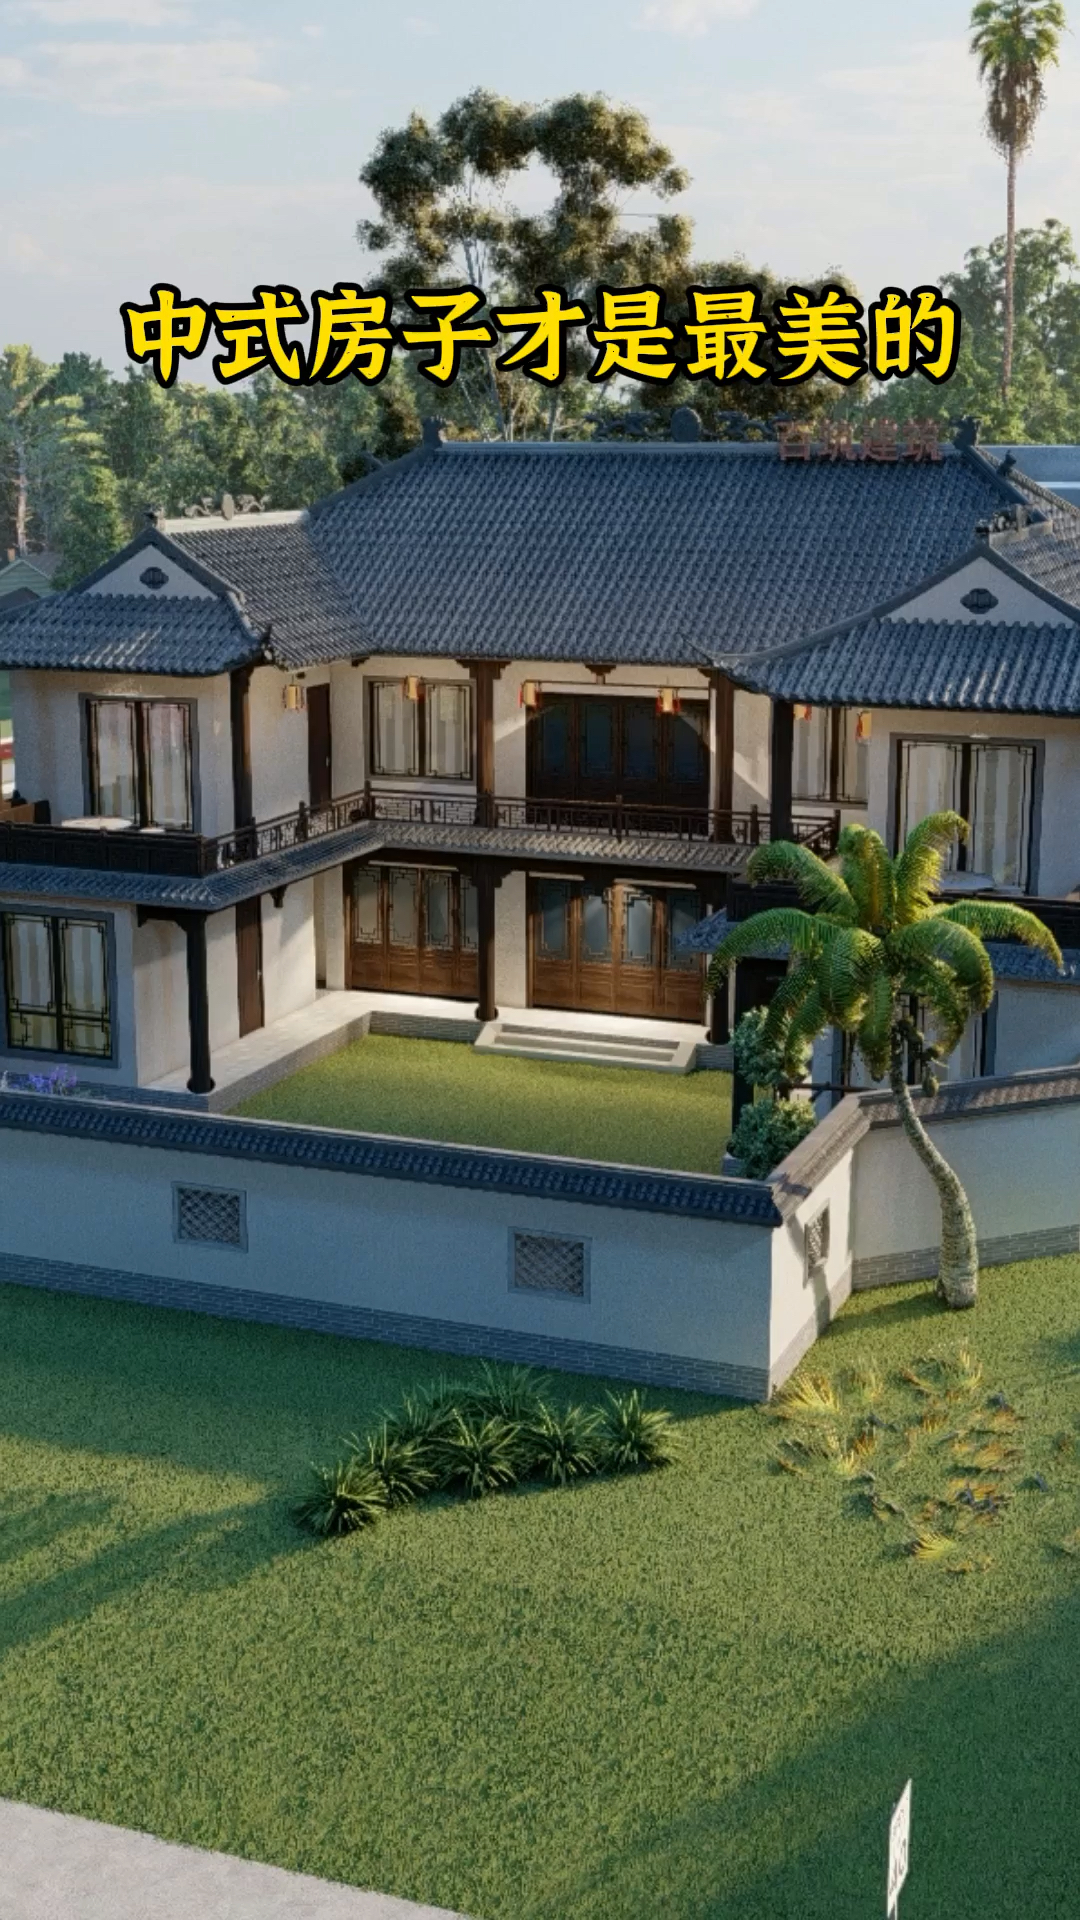 中式小院中式房子才是最美的挑角飞檐亭台楼阁国人的理想住宅